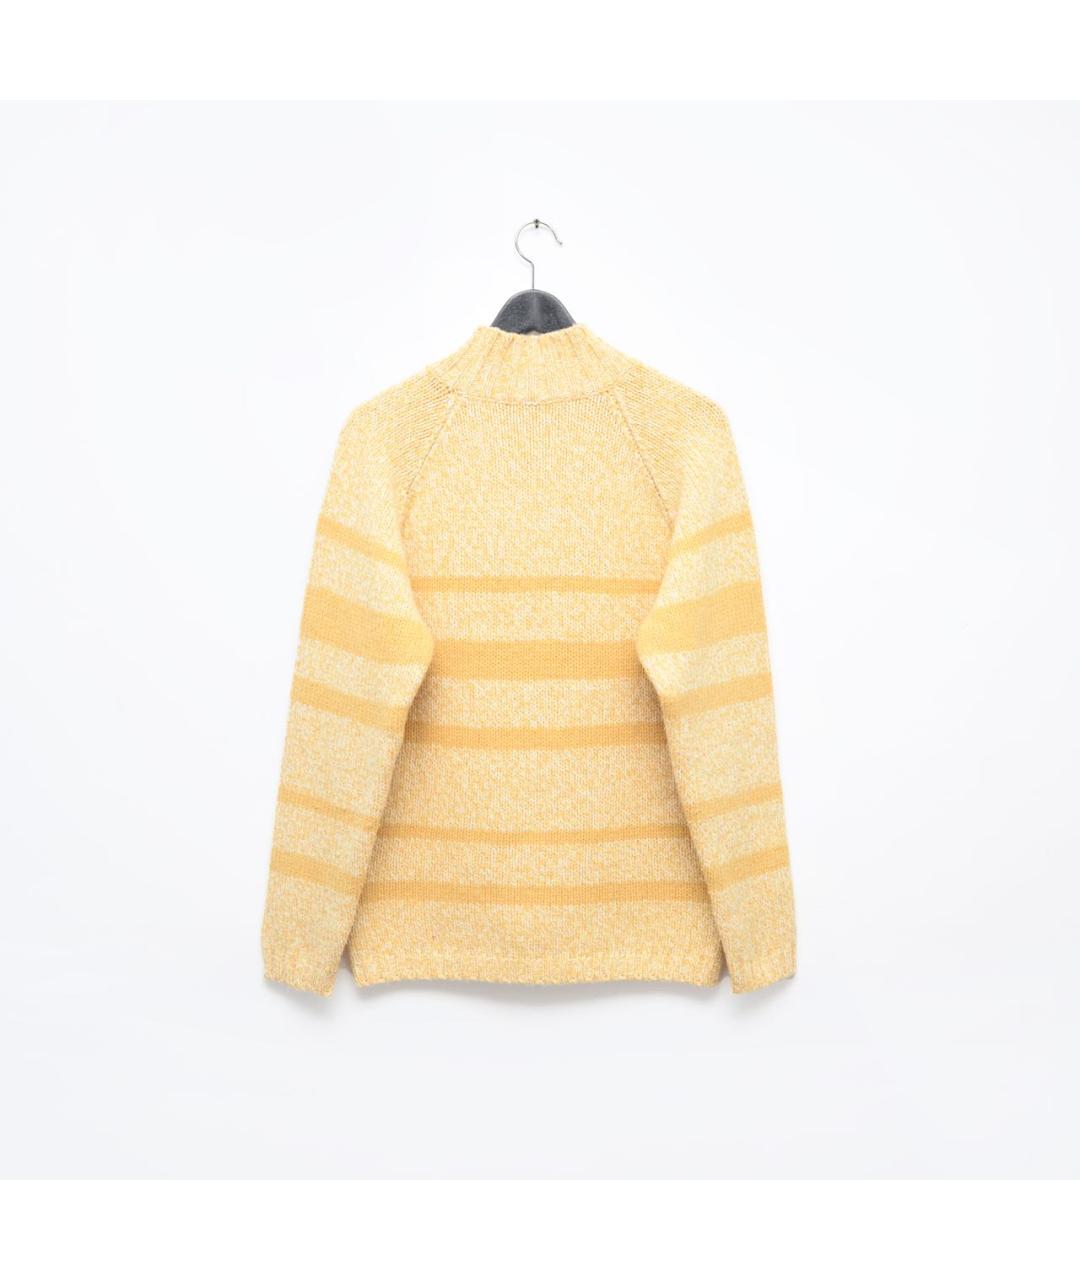 GRAN SASSO Желтый шерстяной джемпер / свитер, фото 2